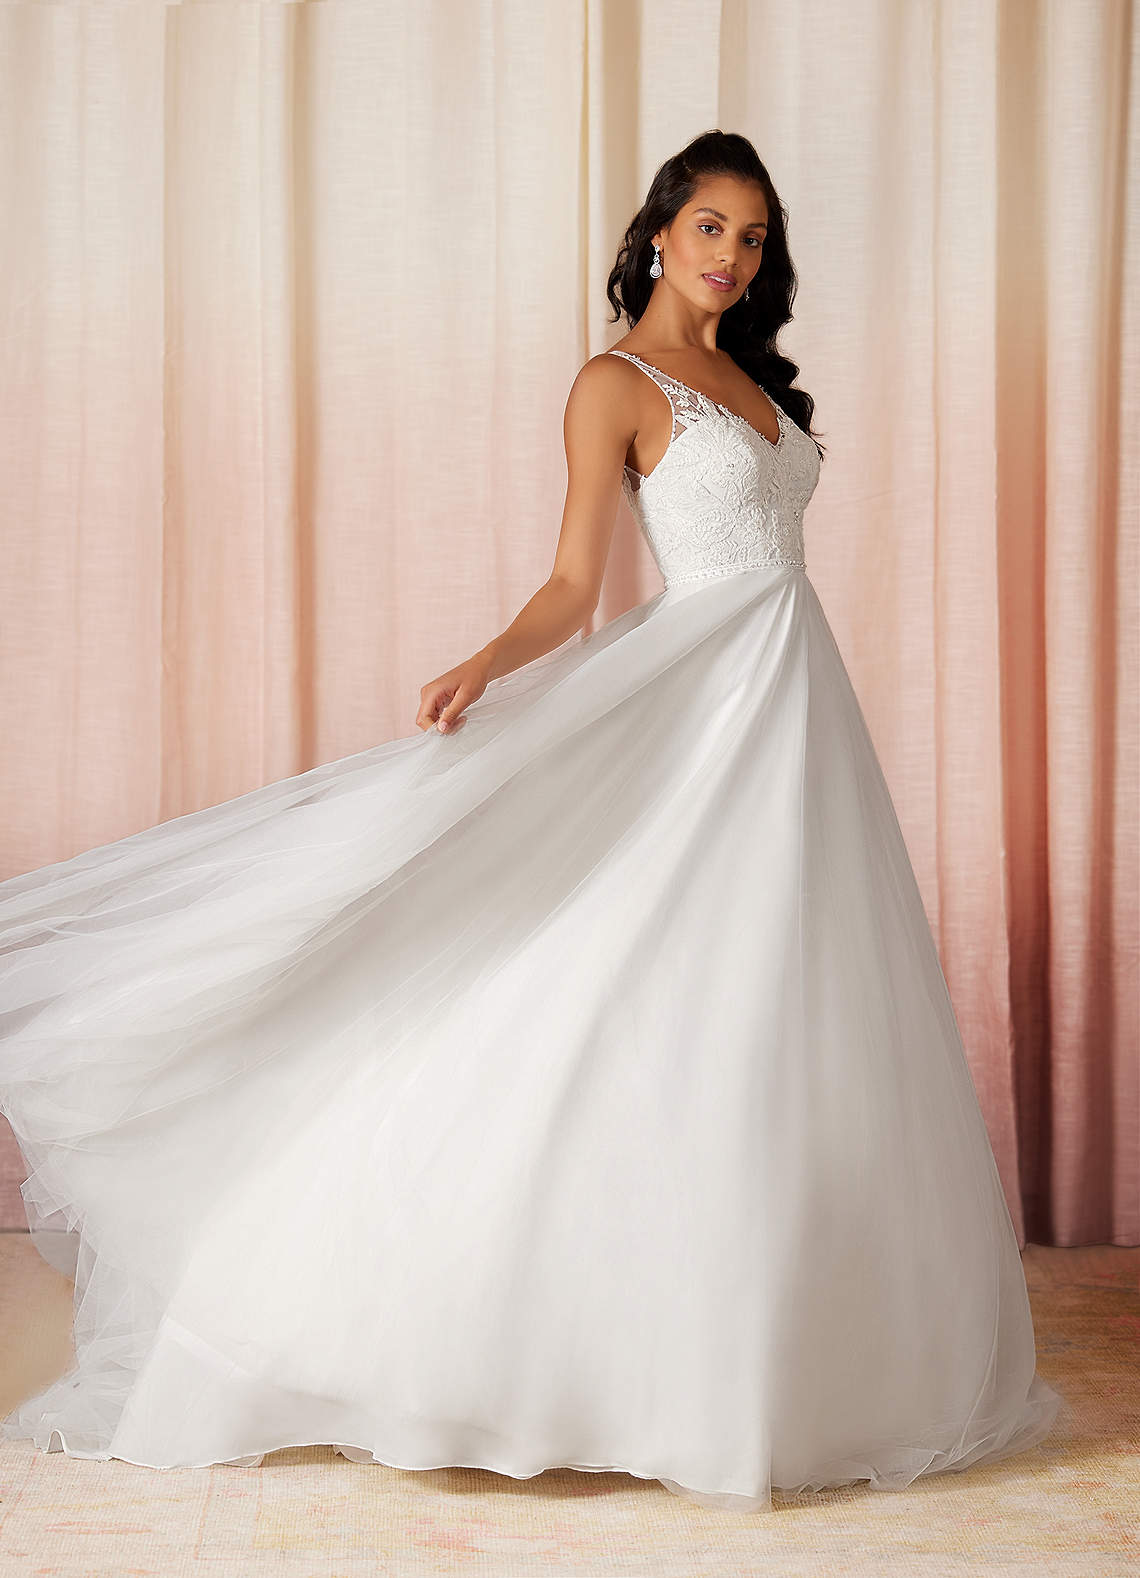 Azazie Sydney Wedding Dresses A-Line Sequins Tulle Chapel Train Dress image1